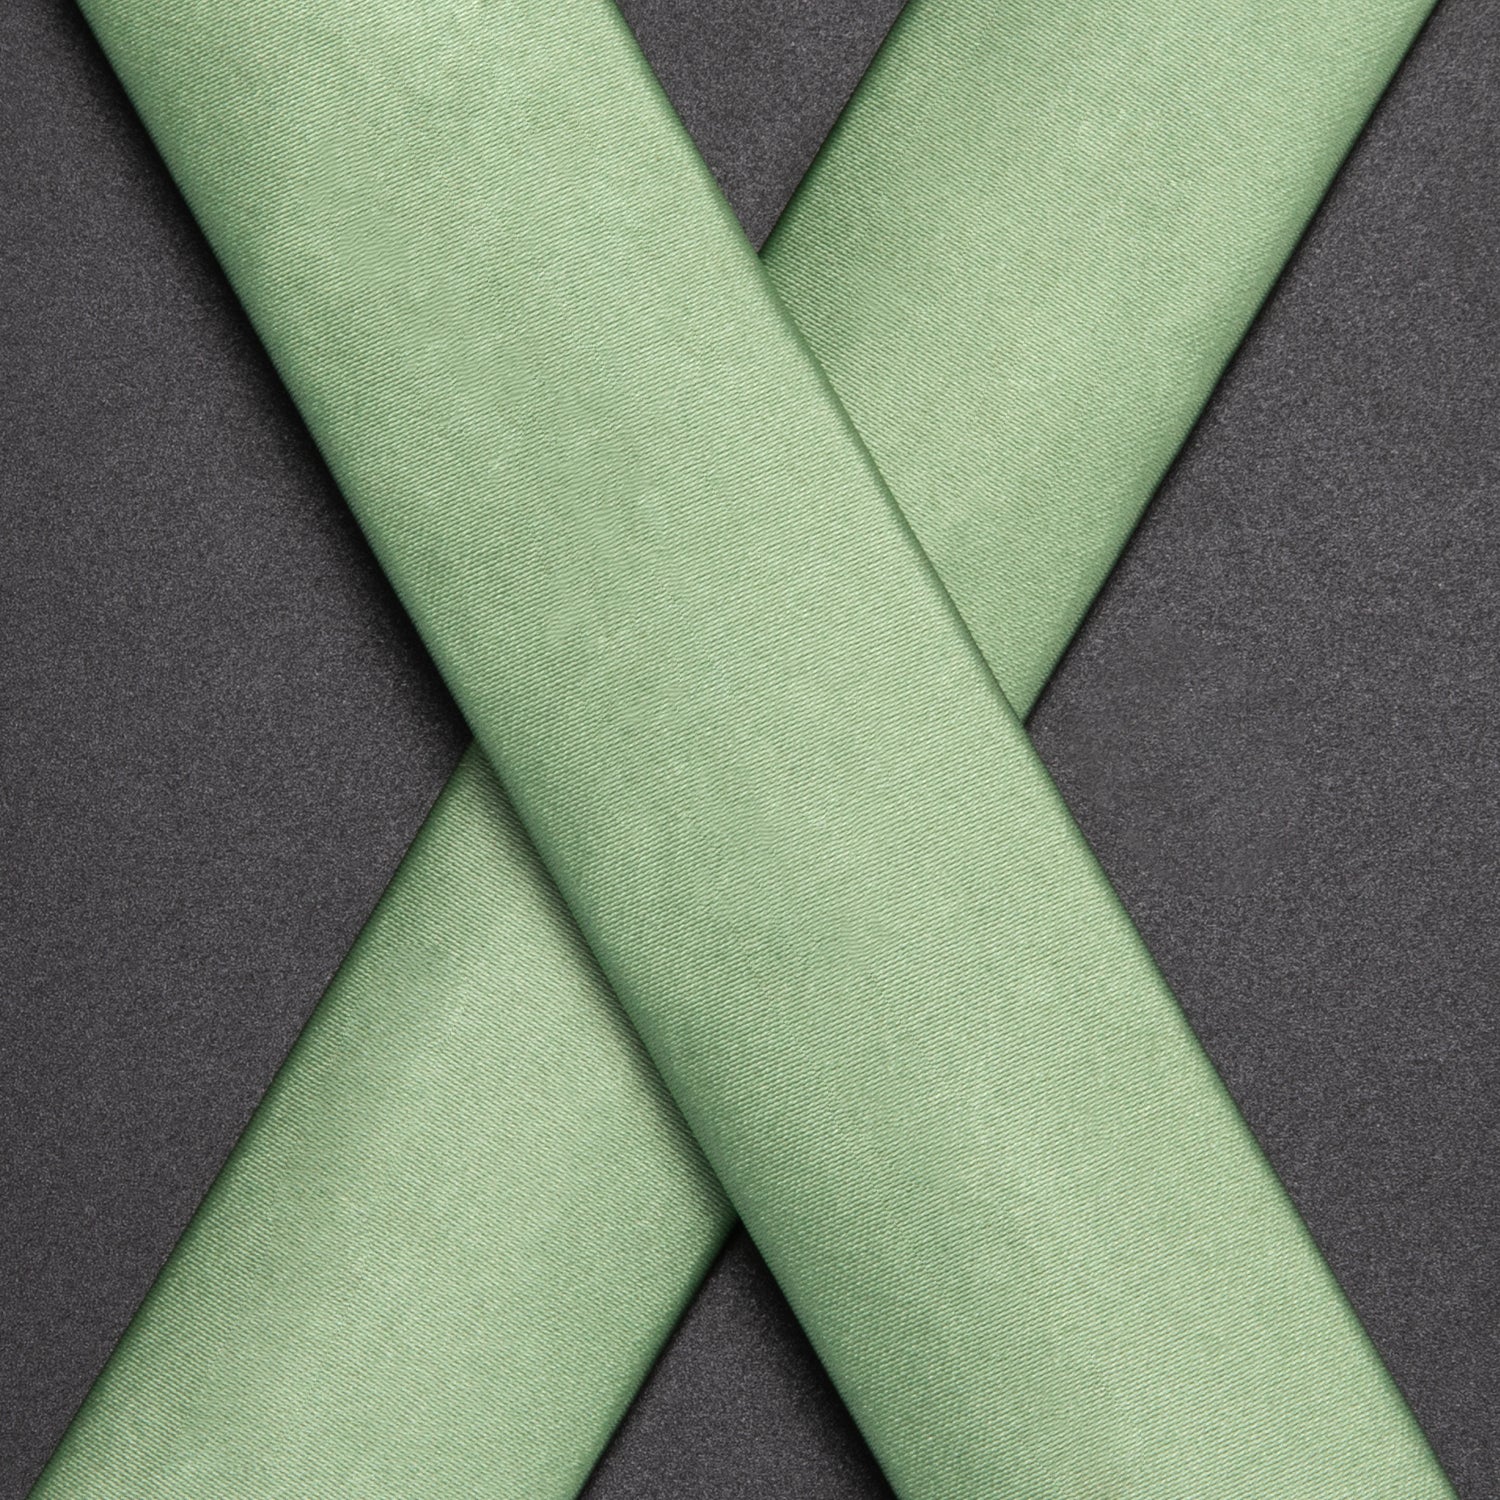 Spring Green Solid Suspender Bowtie Hanky Cufflinks Set